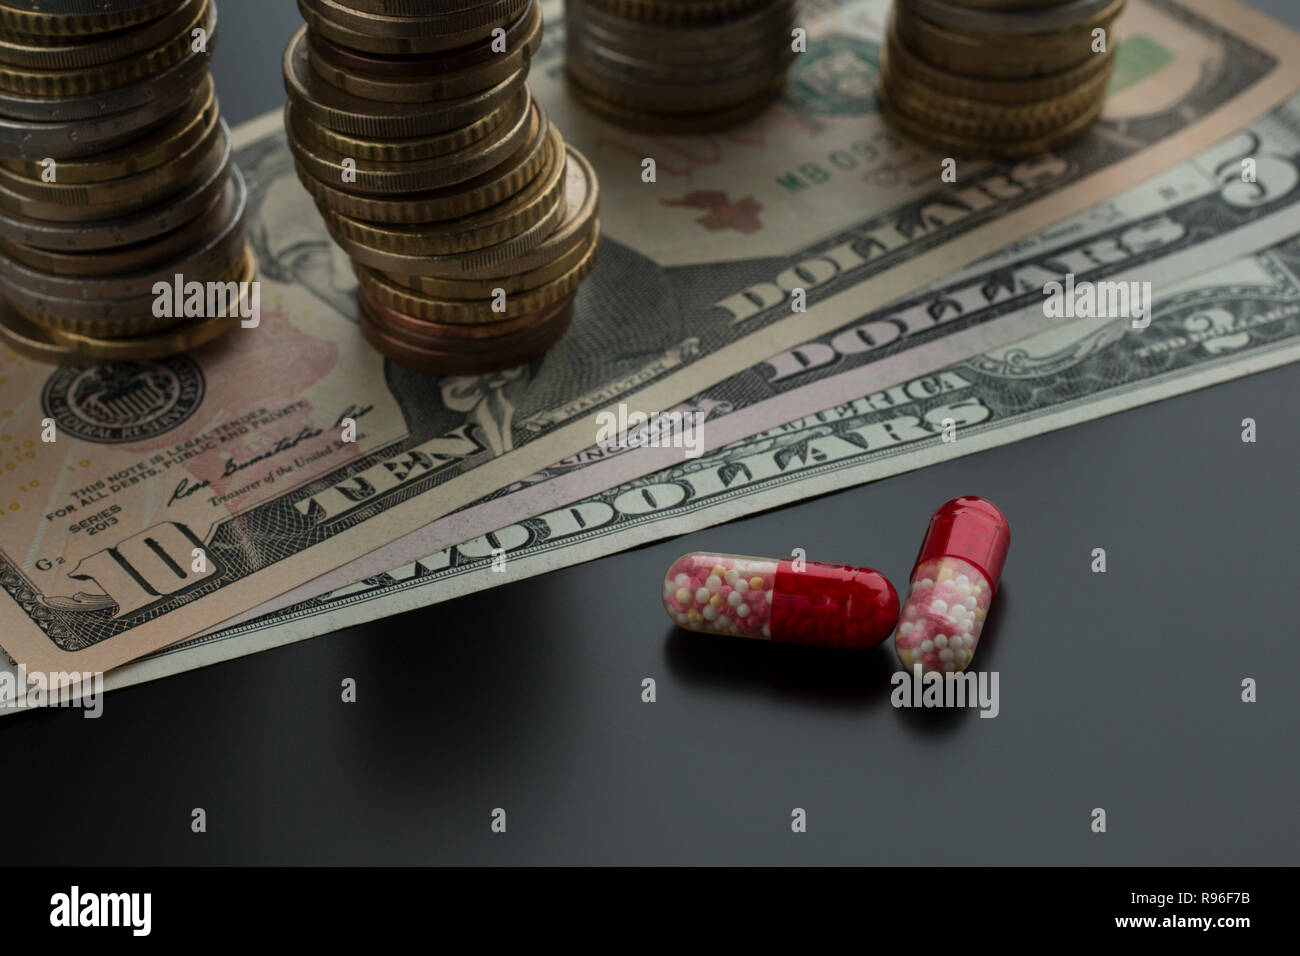 Deux comprimés ou capsules rouges contre des dollars et des piles de pièces de monnaie sur l'arrière-plan. Concept de traitement coûteux Banque D'Images